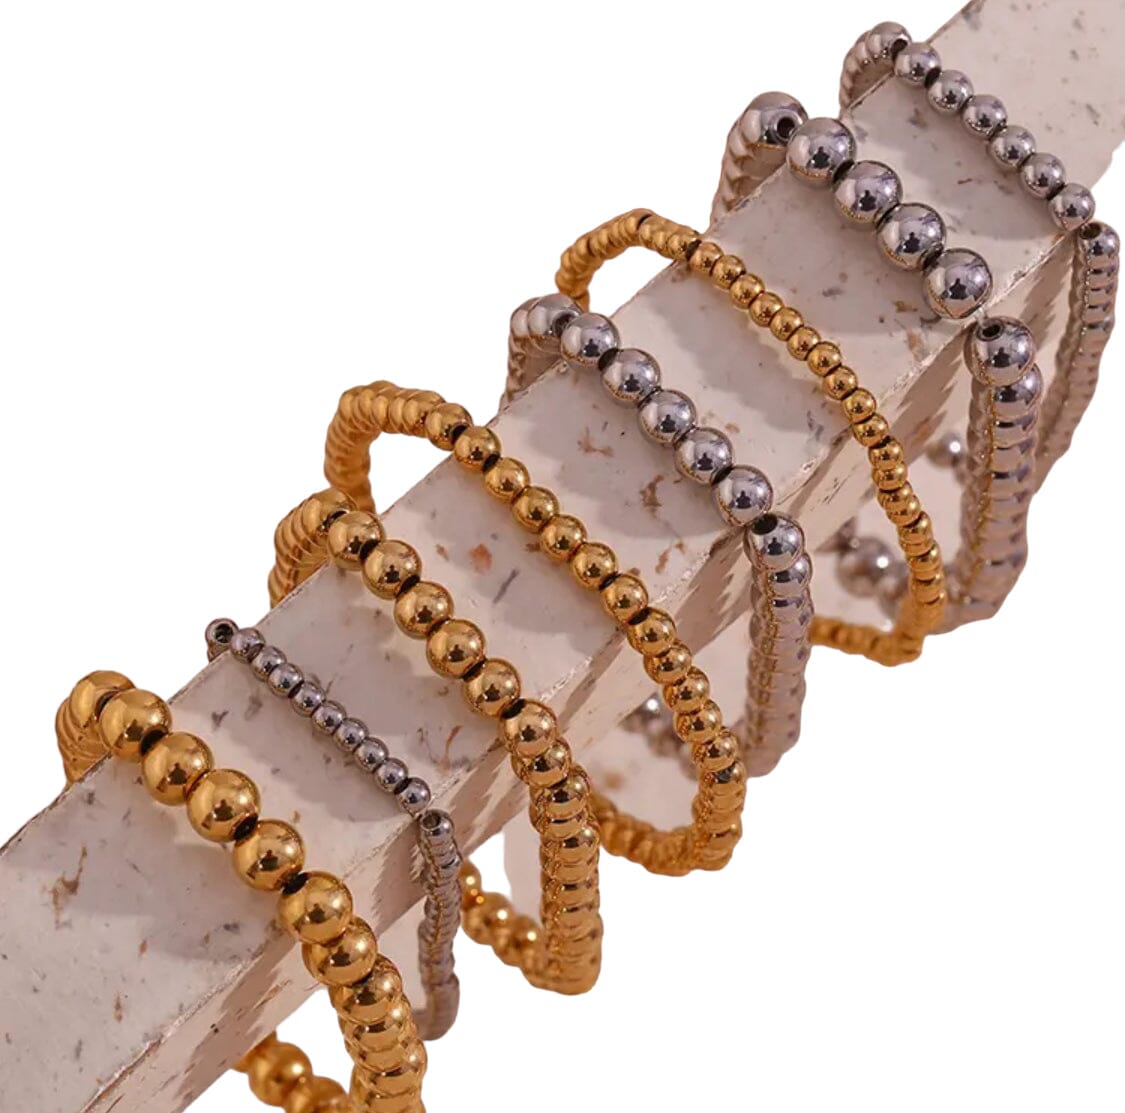 Nellie Gold Ball Stretch Bracelet Bracelets Trendzio Jewelry 